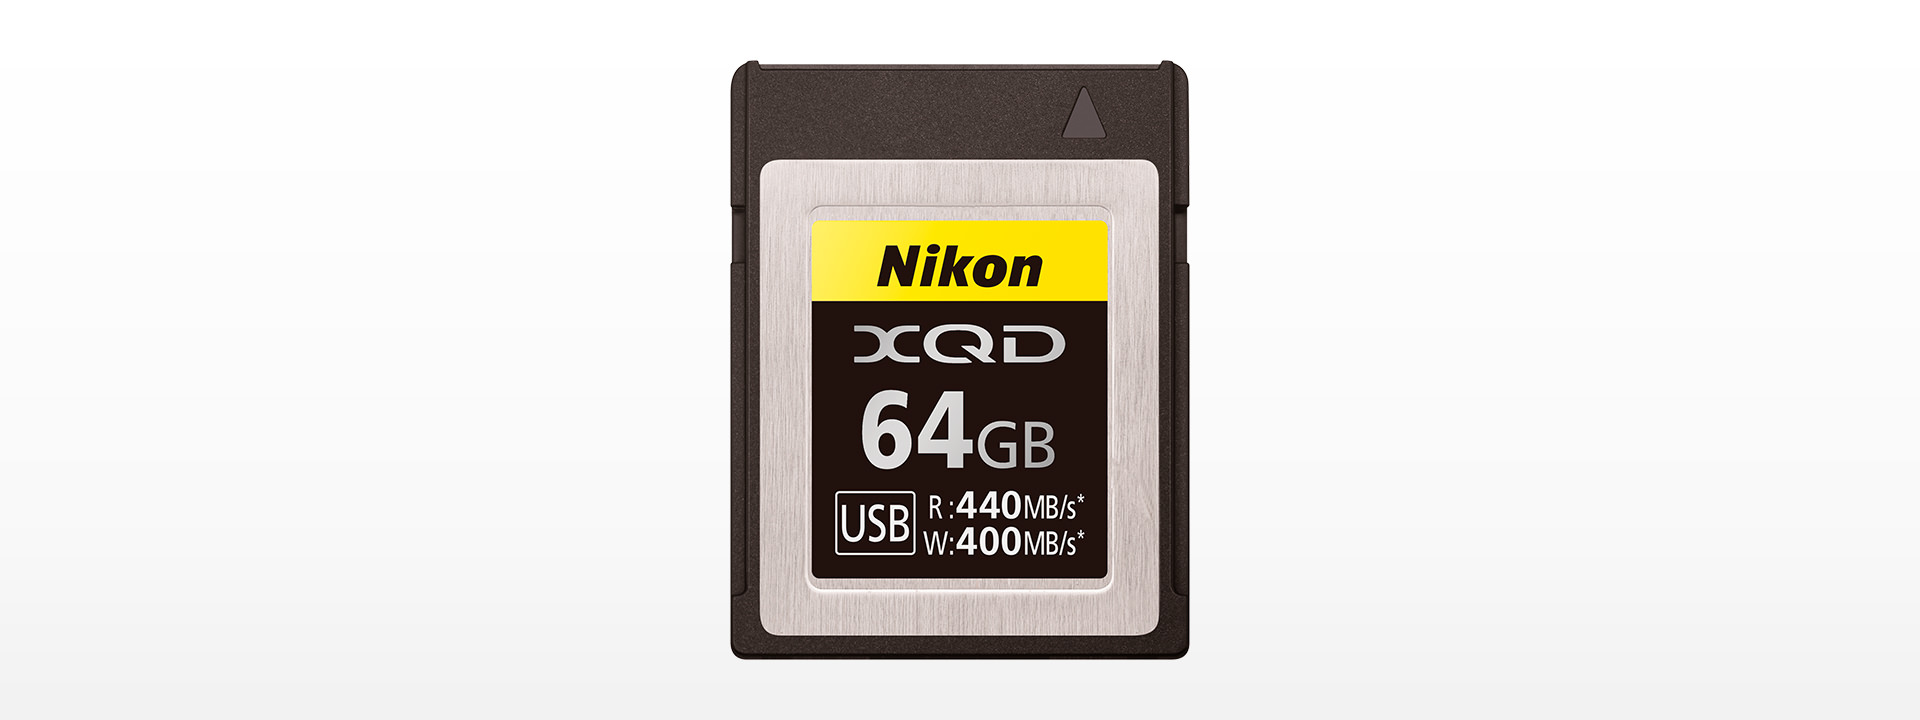 XQDメモリーカード64GB MC-XQ64G - 概要 | ニコンオリジナルグッズ ...